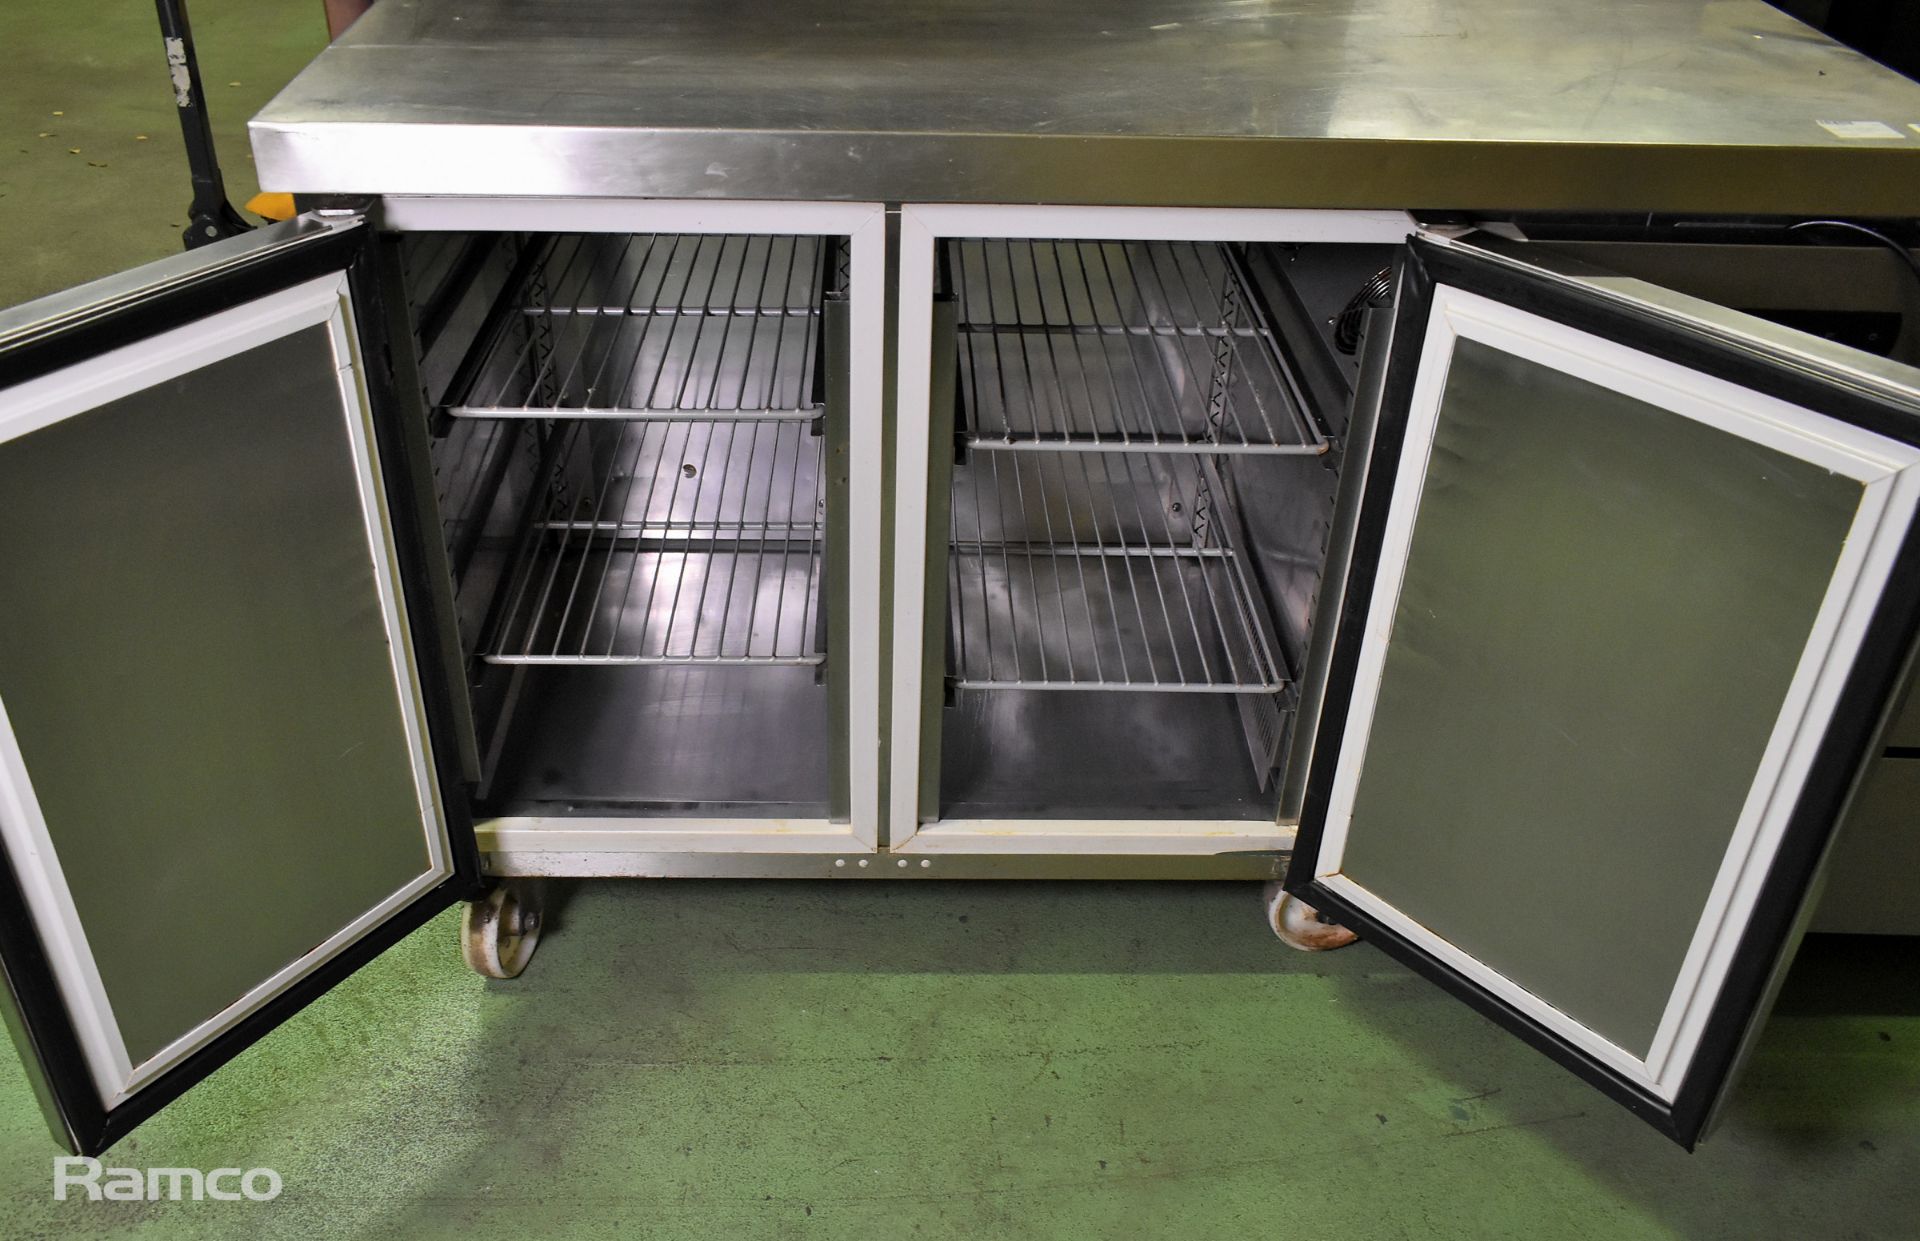 Gram 2 door bench refrigerator - W 1290 x D 700 x H 880mm - Image 2 of 8